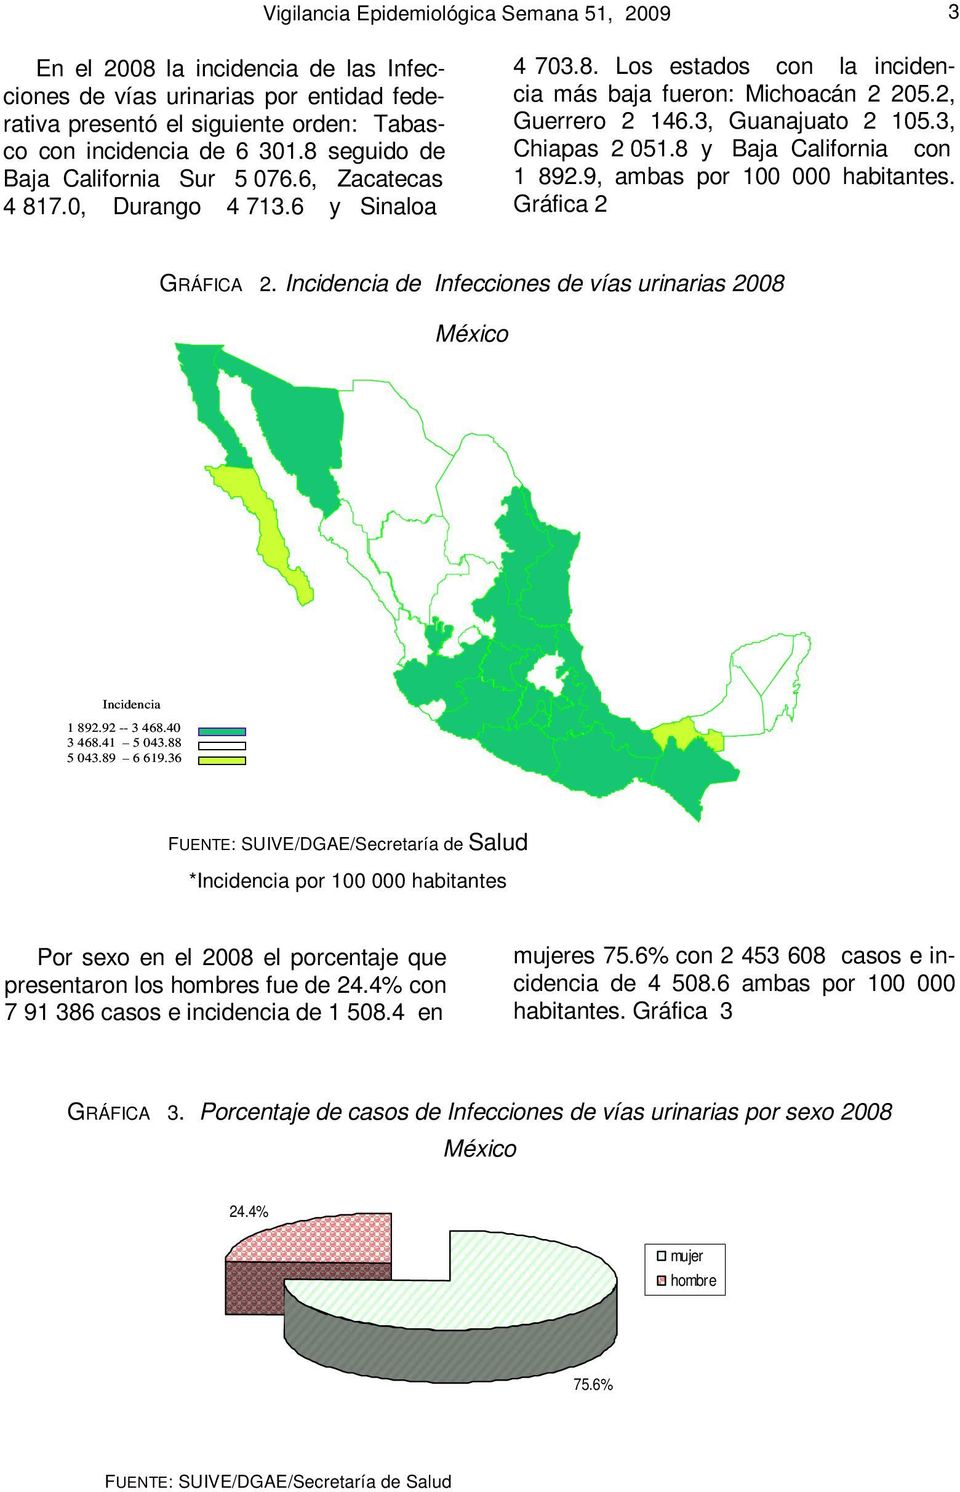 3, Chiapas 2 051.8 y Baja California con 1 892.9, ambas por 100 000 habitantes. Gráfica 2 GRÁFICA 2. Incidencia de Infecciones de vías urinarias México Incidencia 1 892.92 -- 3 468.40 3 468.41 5 043.